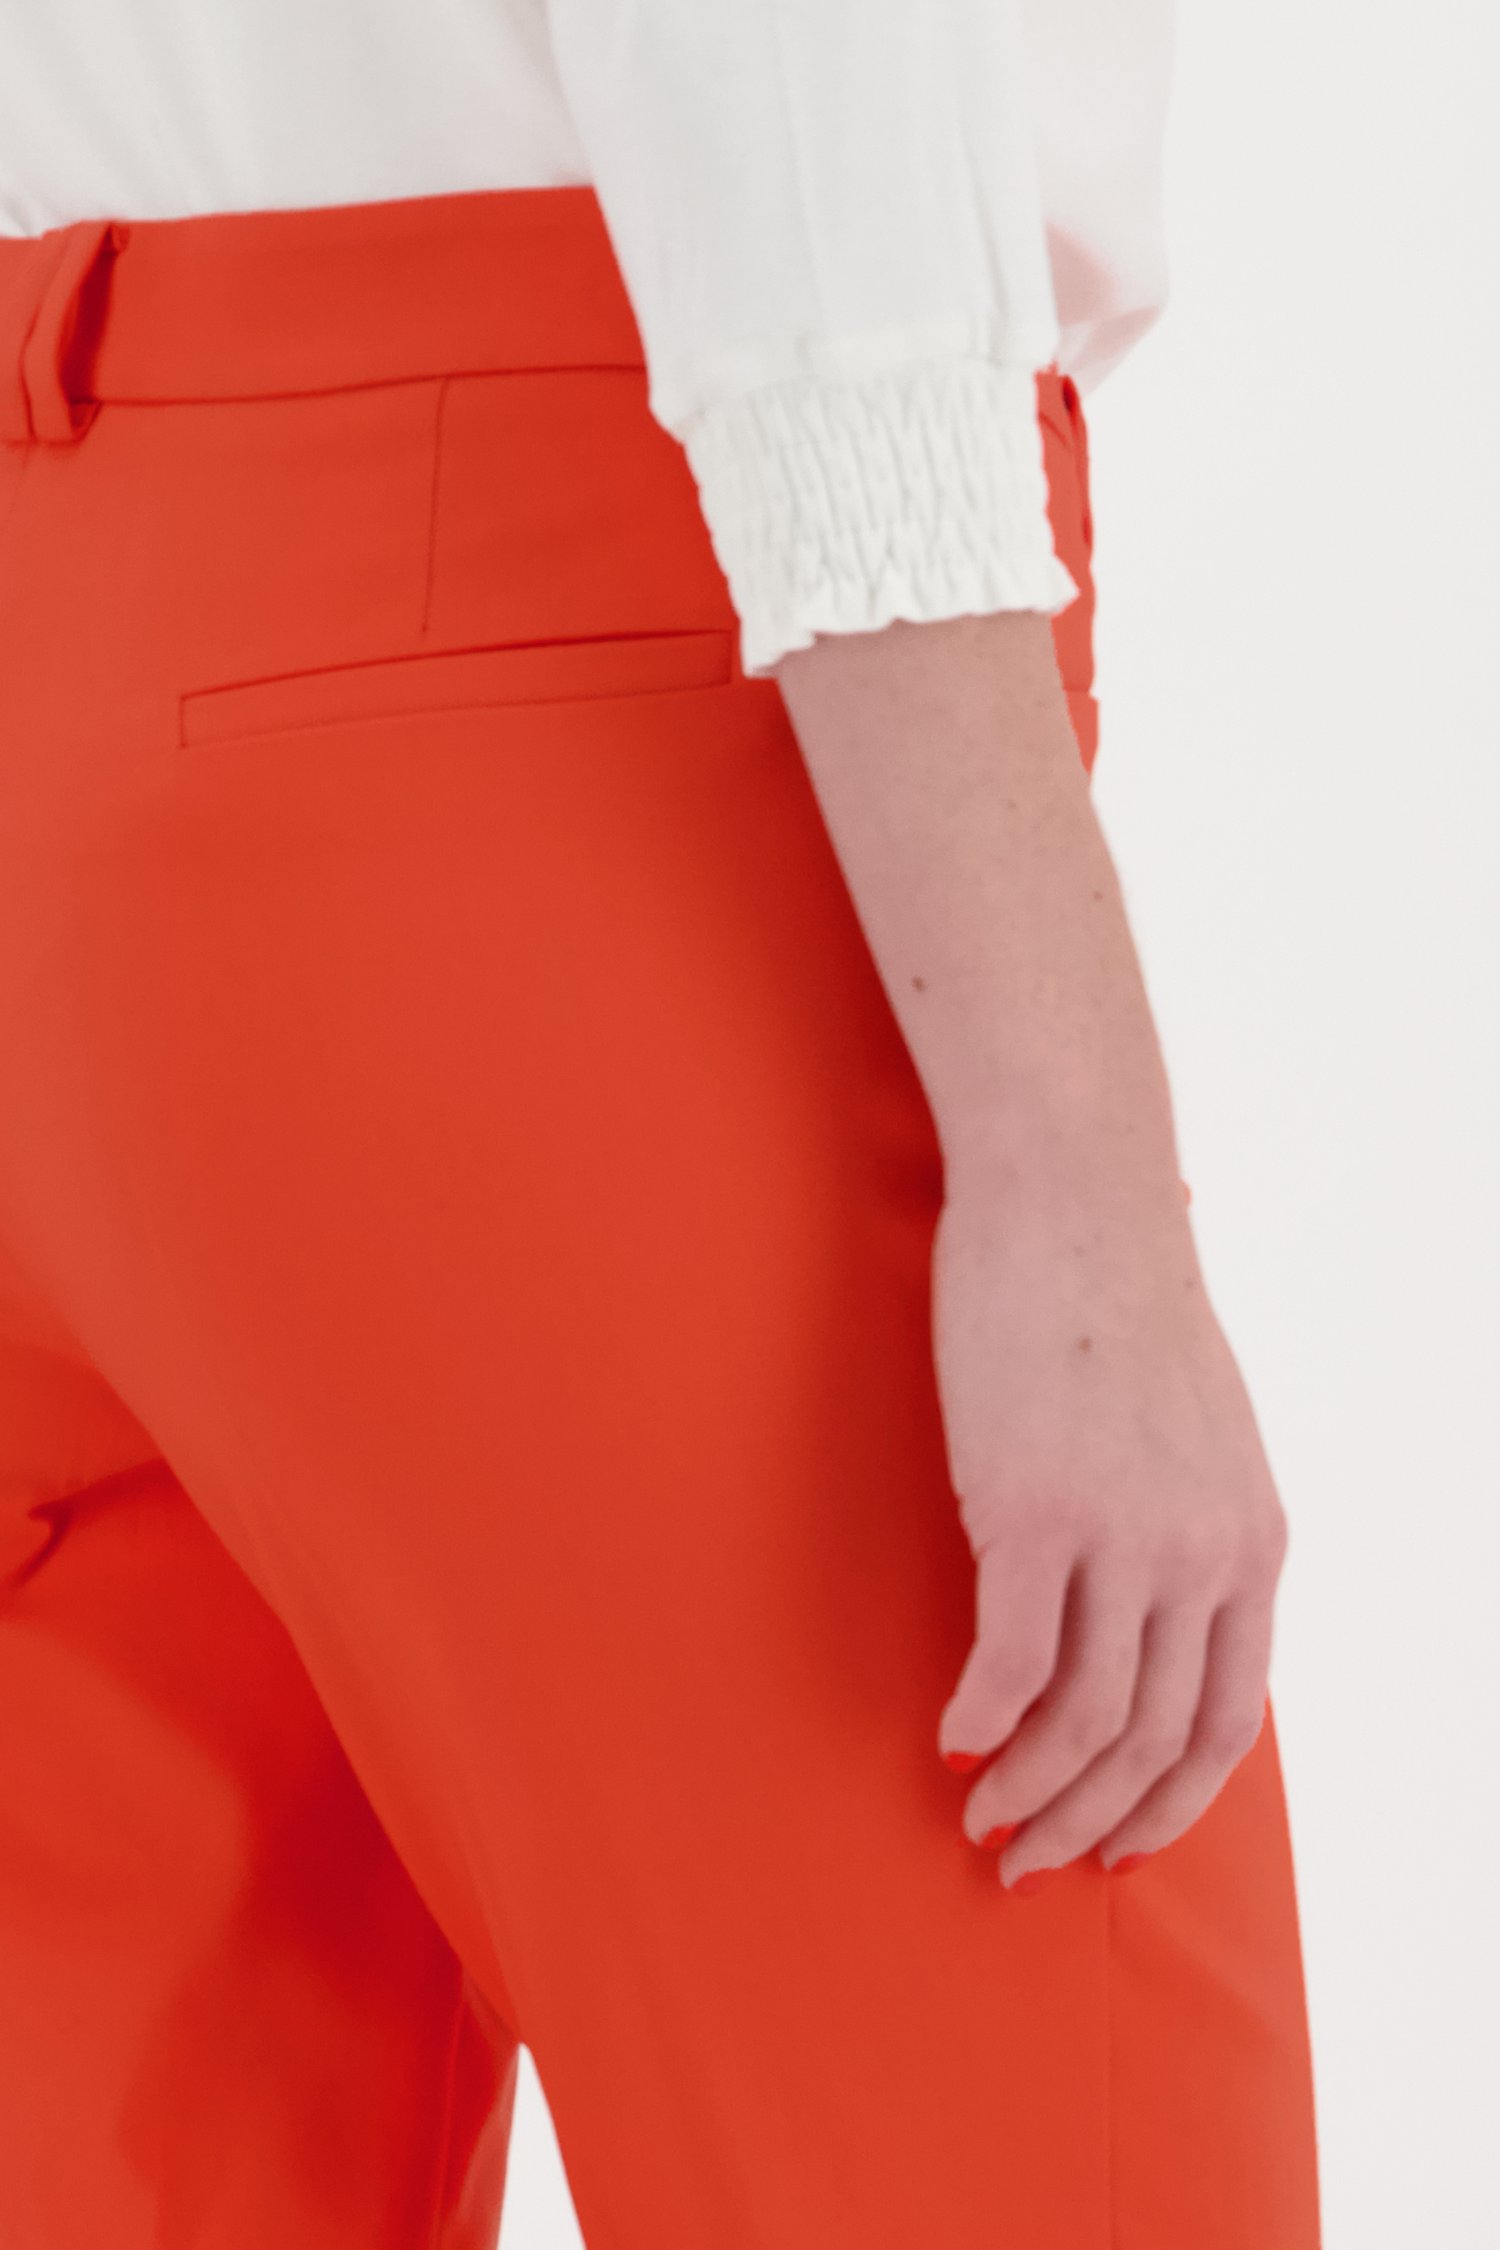 Oranje geklede broek van More & More voor Dames